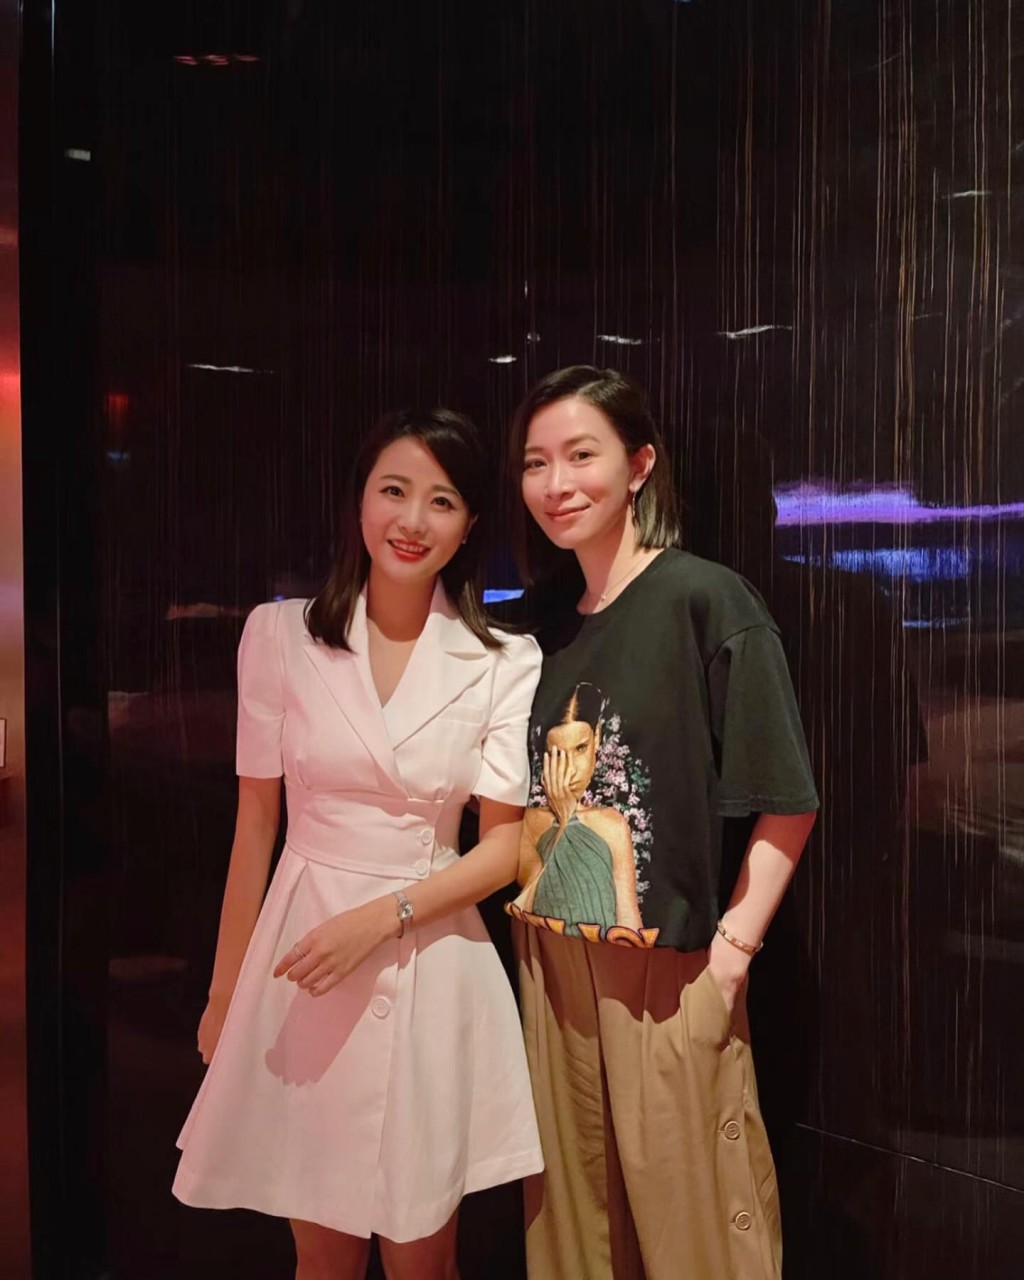 连前TVB新闻主播温荞菲都赞佘诗曼专业、随和又亲切。